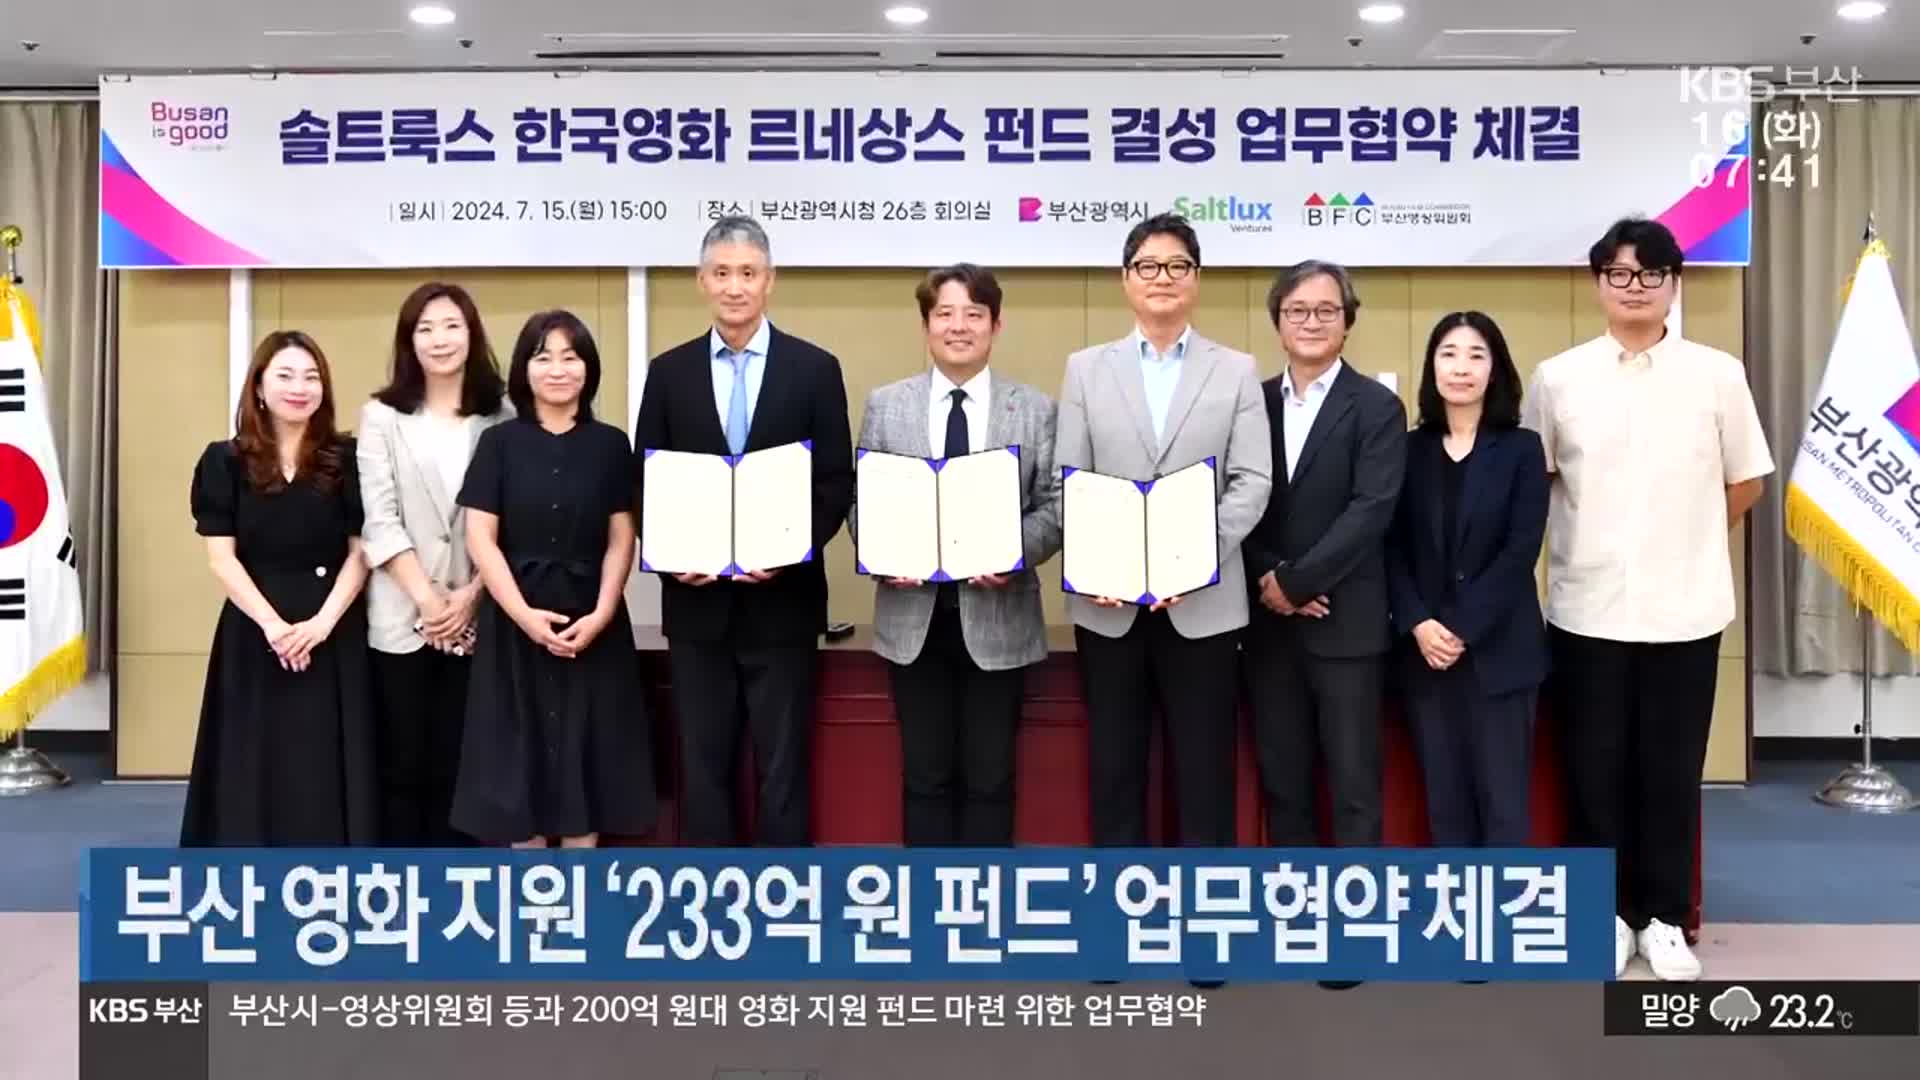 부산 영화 지원 ‘233억 원 펀드’ 업무협약 체결